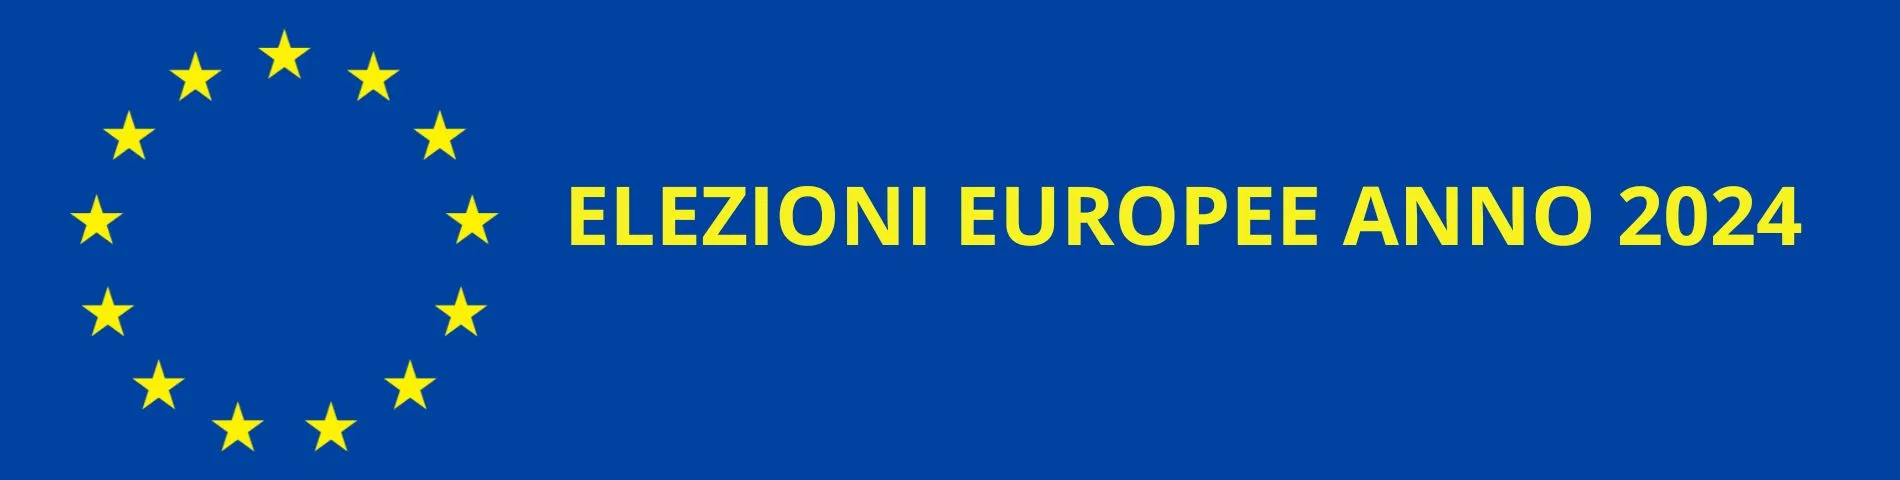 elezioni europee 2024 - Formazione elenco suppletivo degli Scrutatori e dei Presidenti di seggio